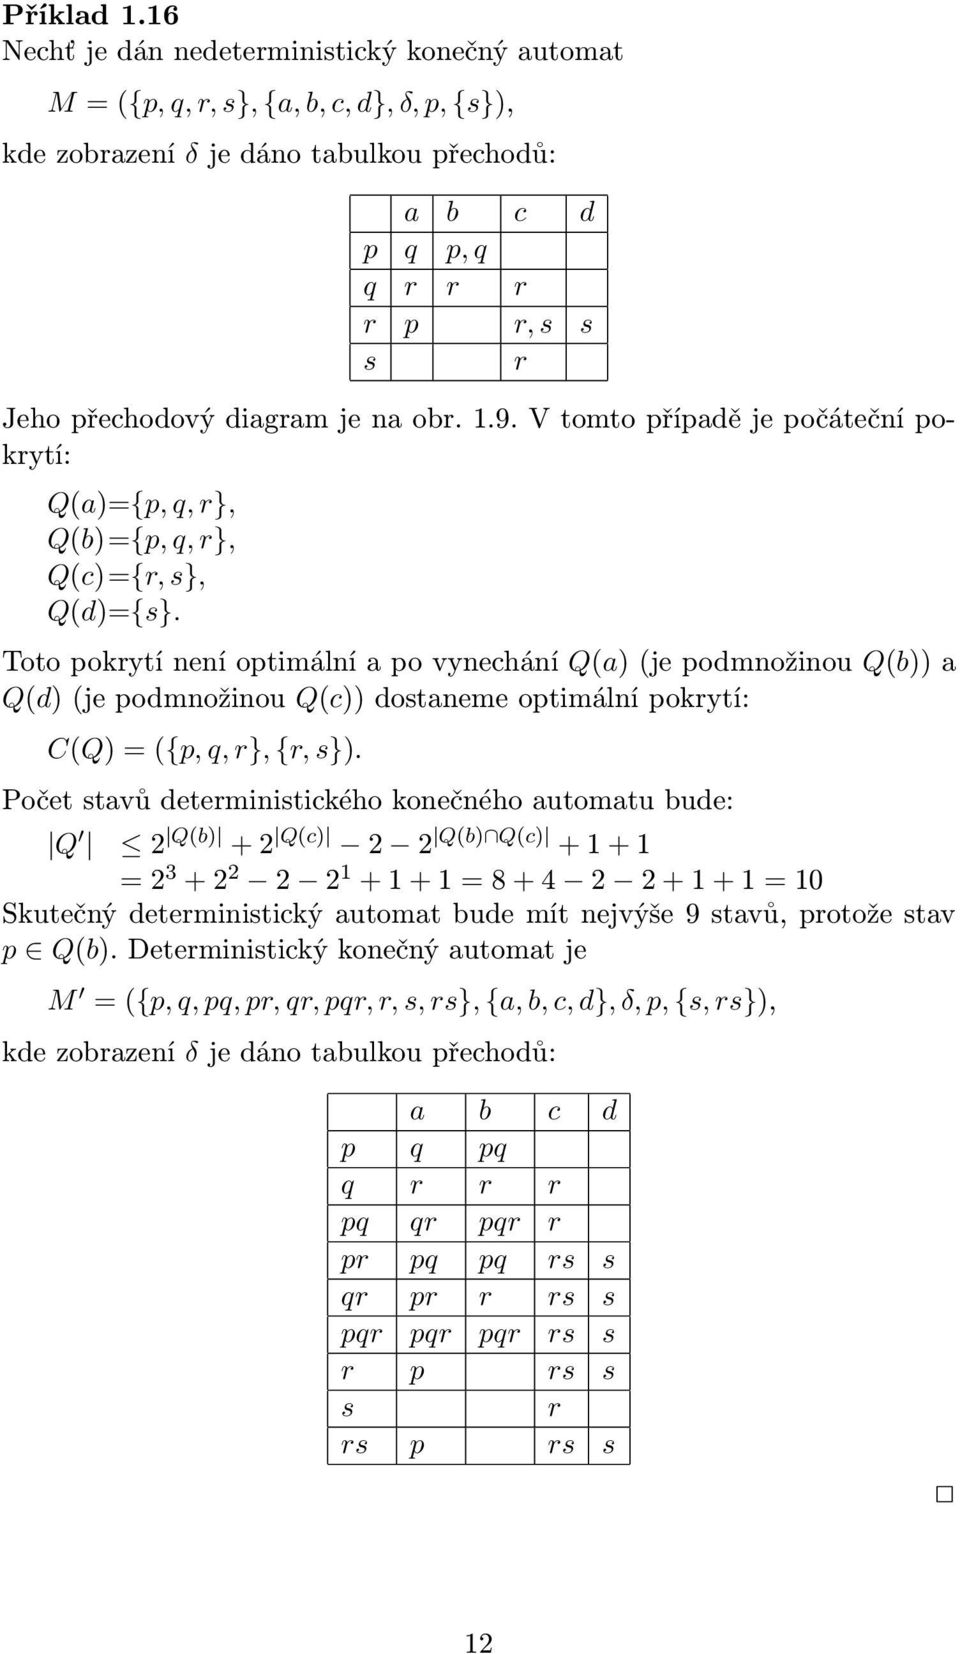 Toto pokrytí není optimální po vynechání Q()(je podmnožinou Q()) Q(d)(je podmnožinou Q(c)) dostneme optimální pokrytí: C(Q)=({p, q, r}, {r, s}).